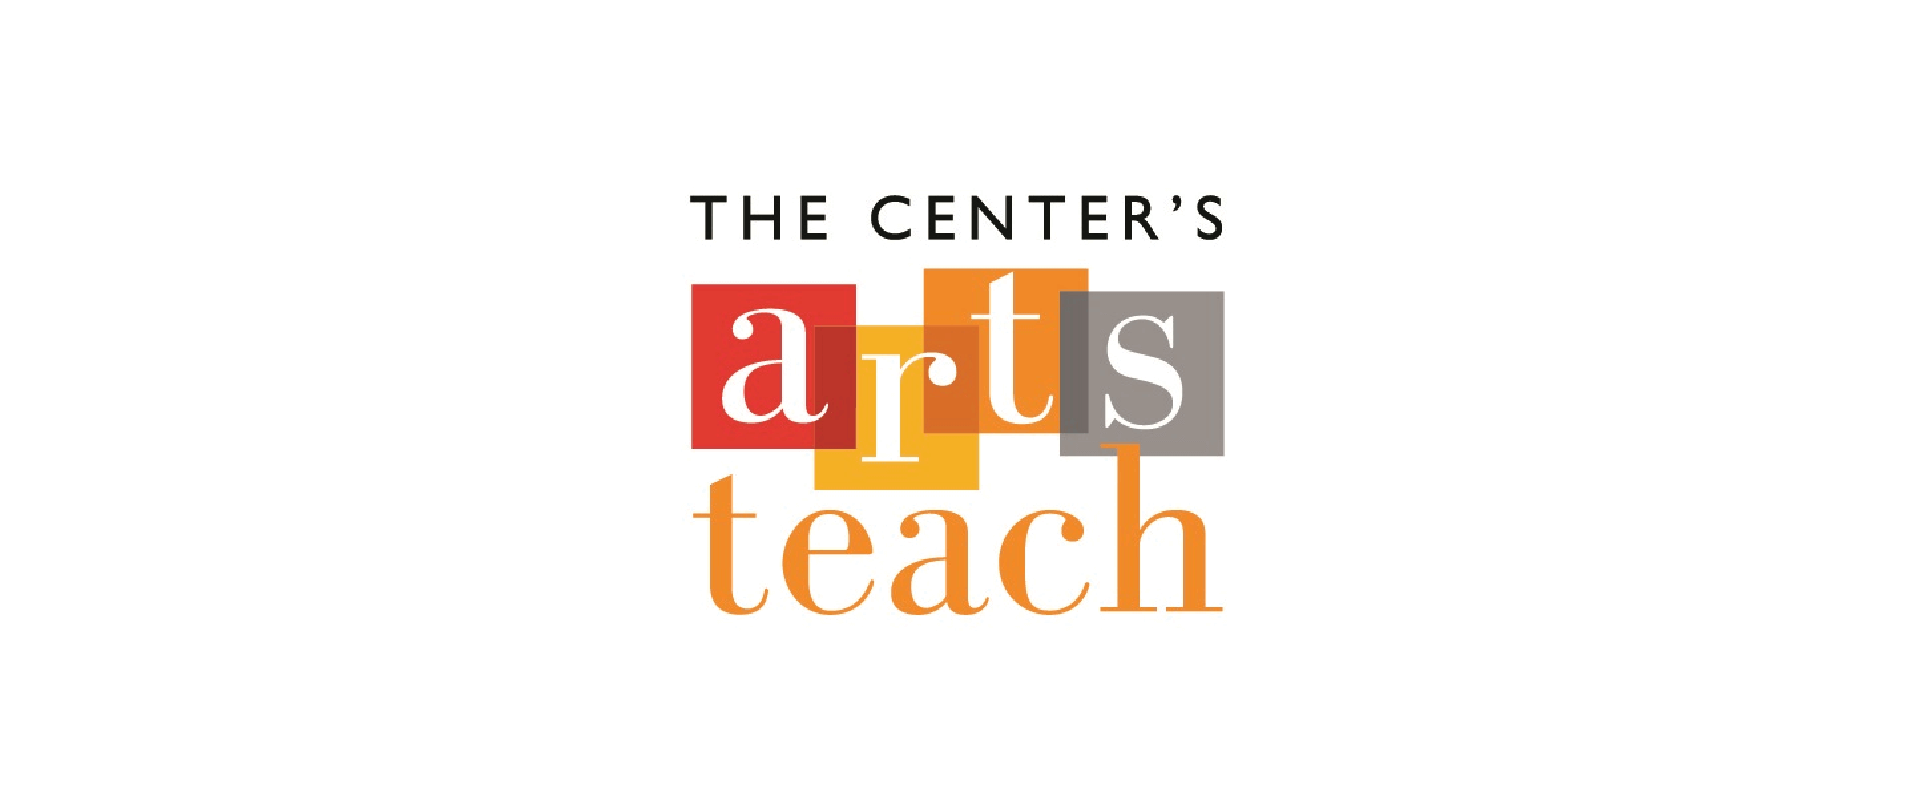 The Center's Arts Teach logo